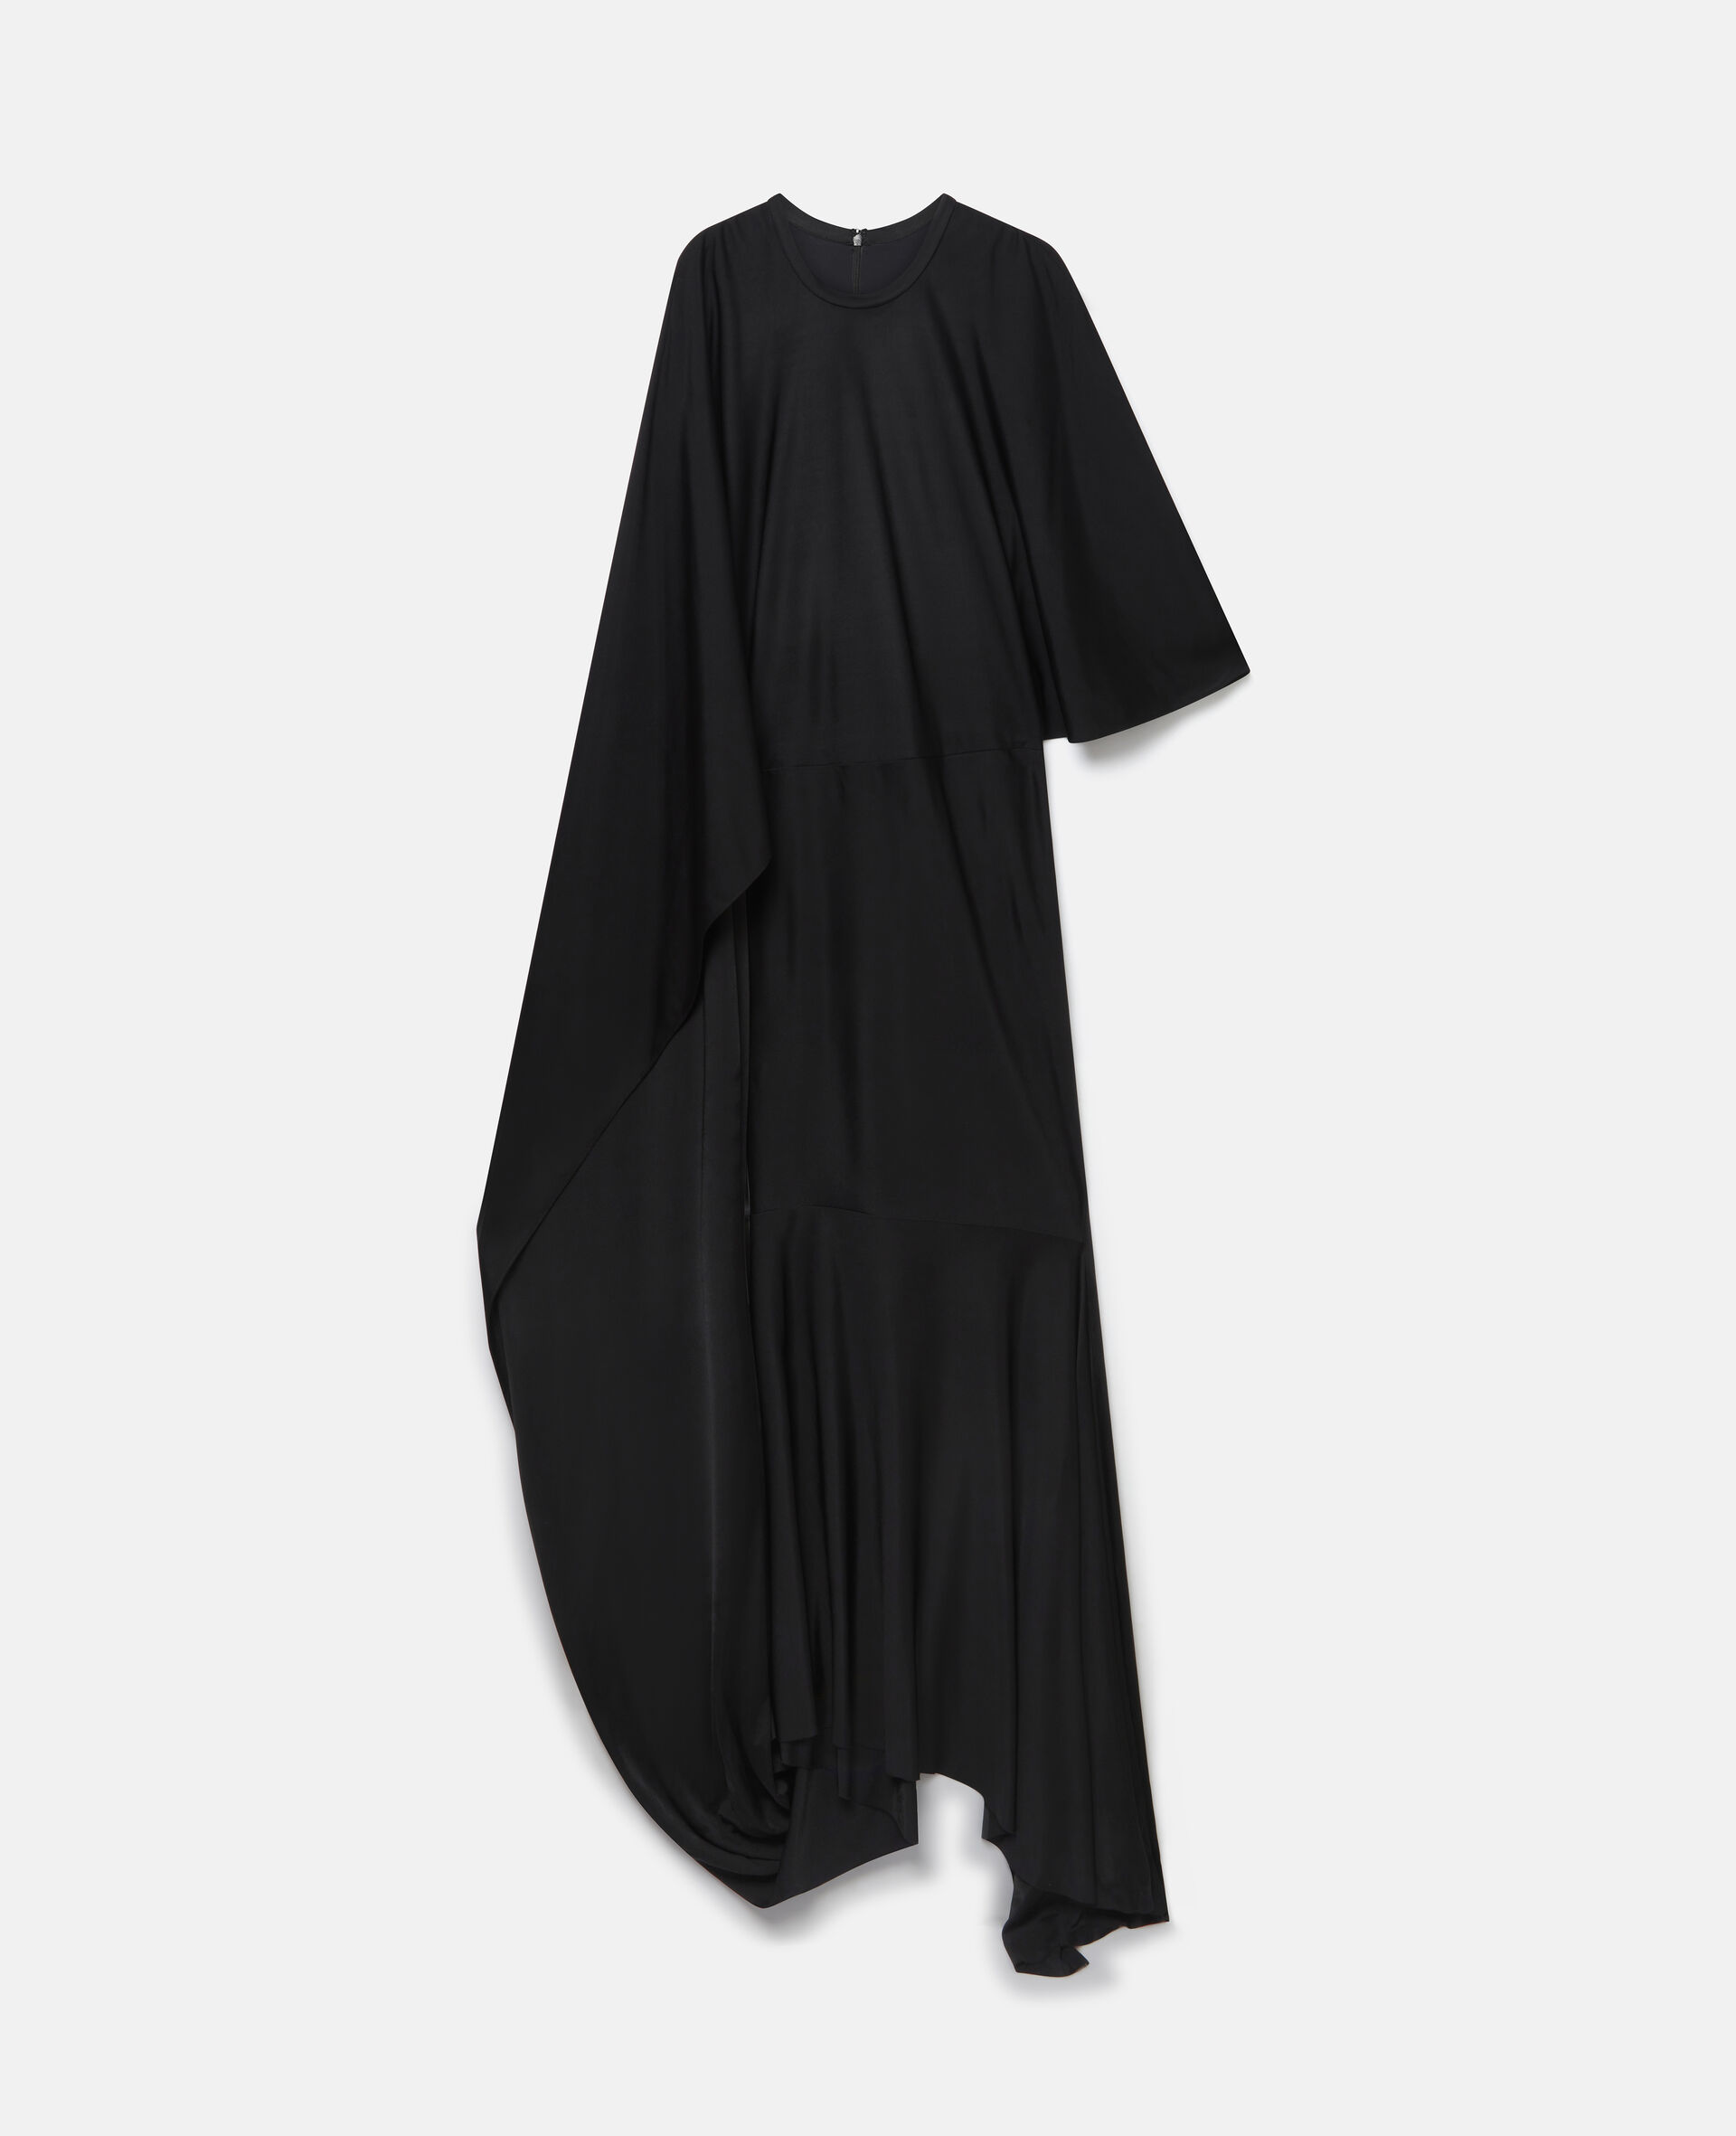 Robe asymetrique a manches cape-Noir-large image number 0